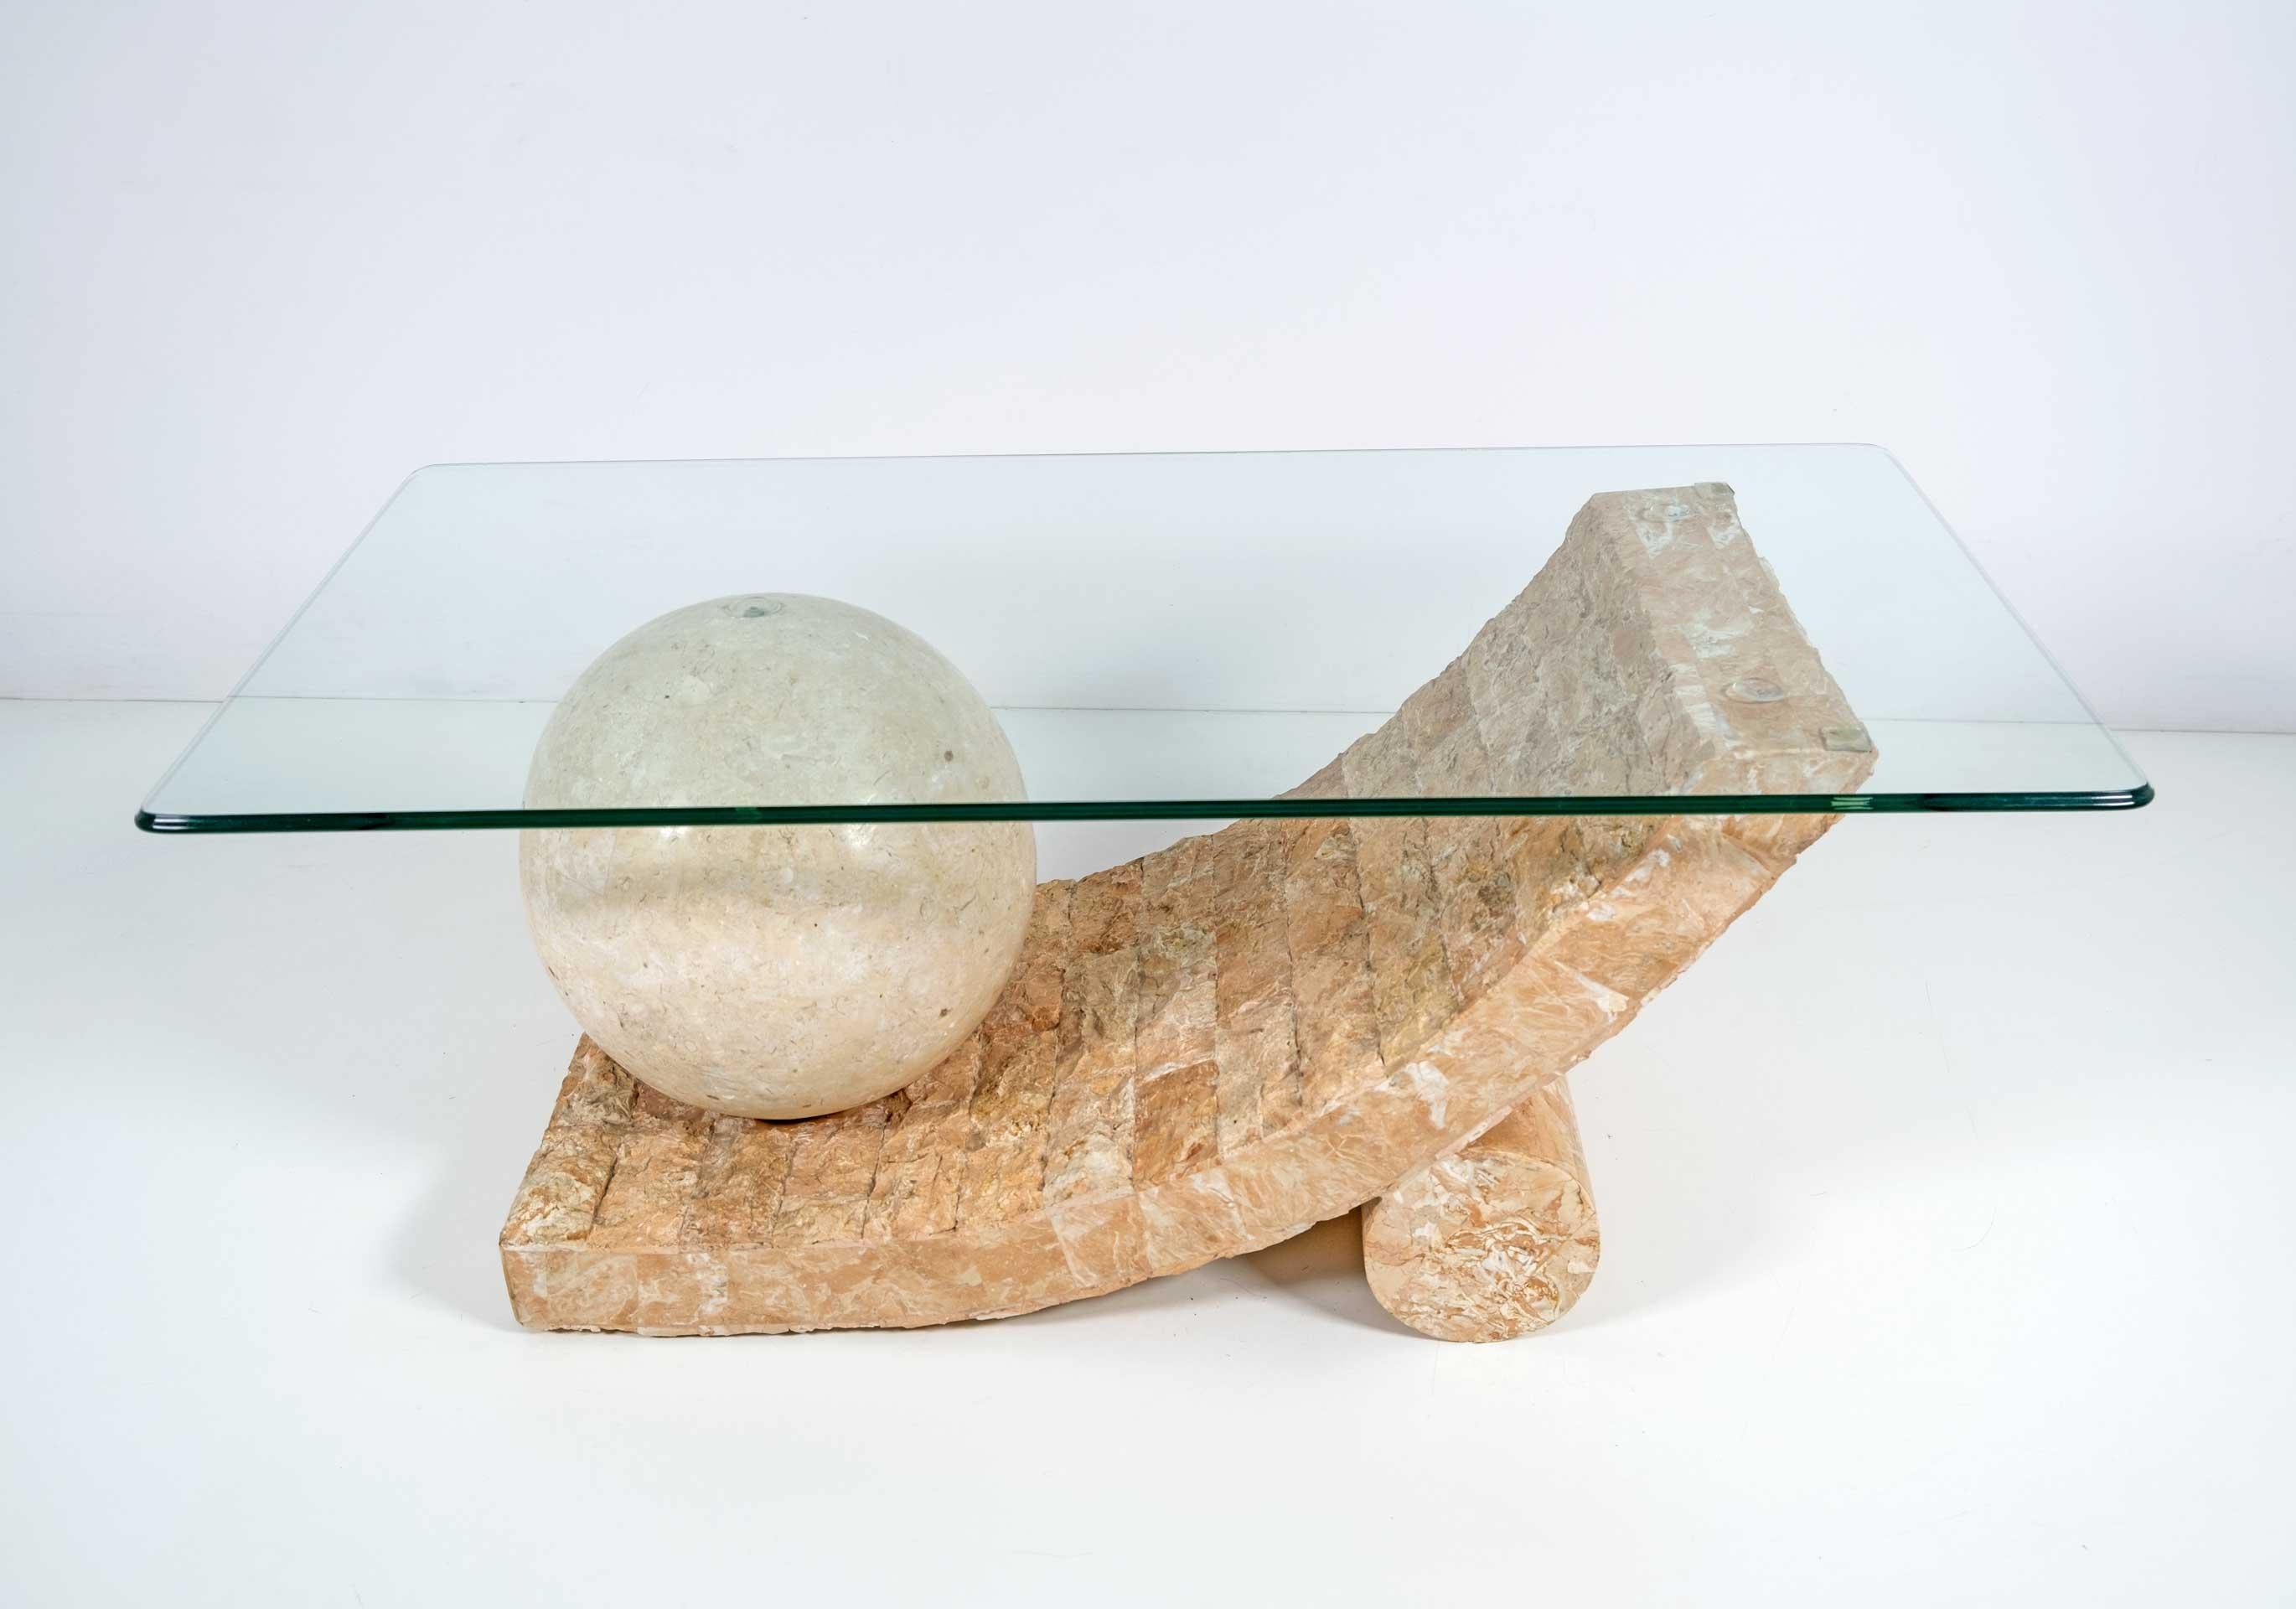 Schöner Couchtisch oder Beistelltisch von Magnussen Ponte, 1980er Jahre. Der schöne Sockel des Tisches ist aus Mactan-Stein oder Fossil-Stein gefertigt. Facettierte Glasplatte.